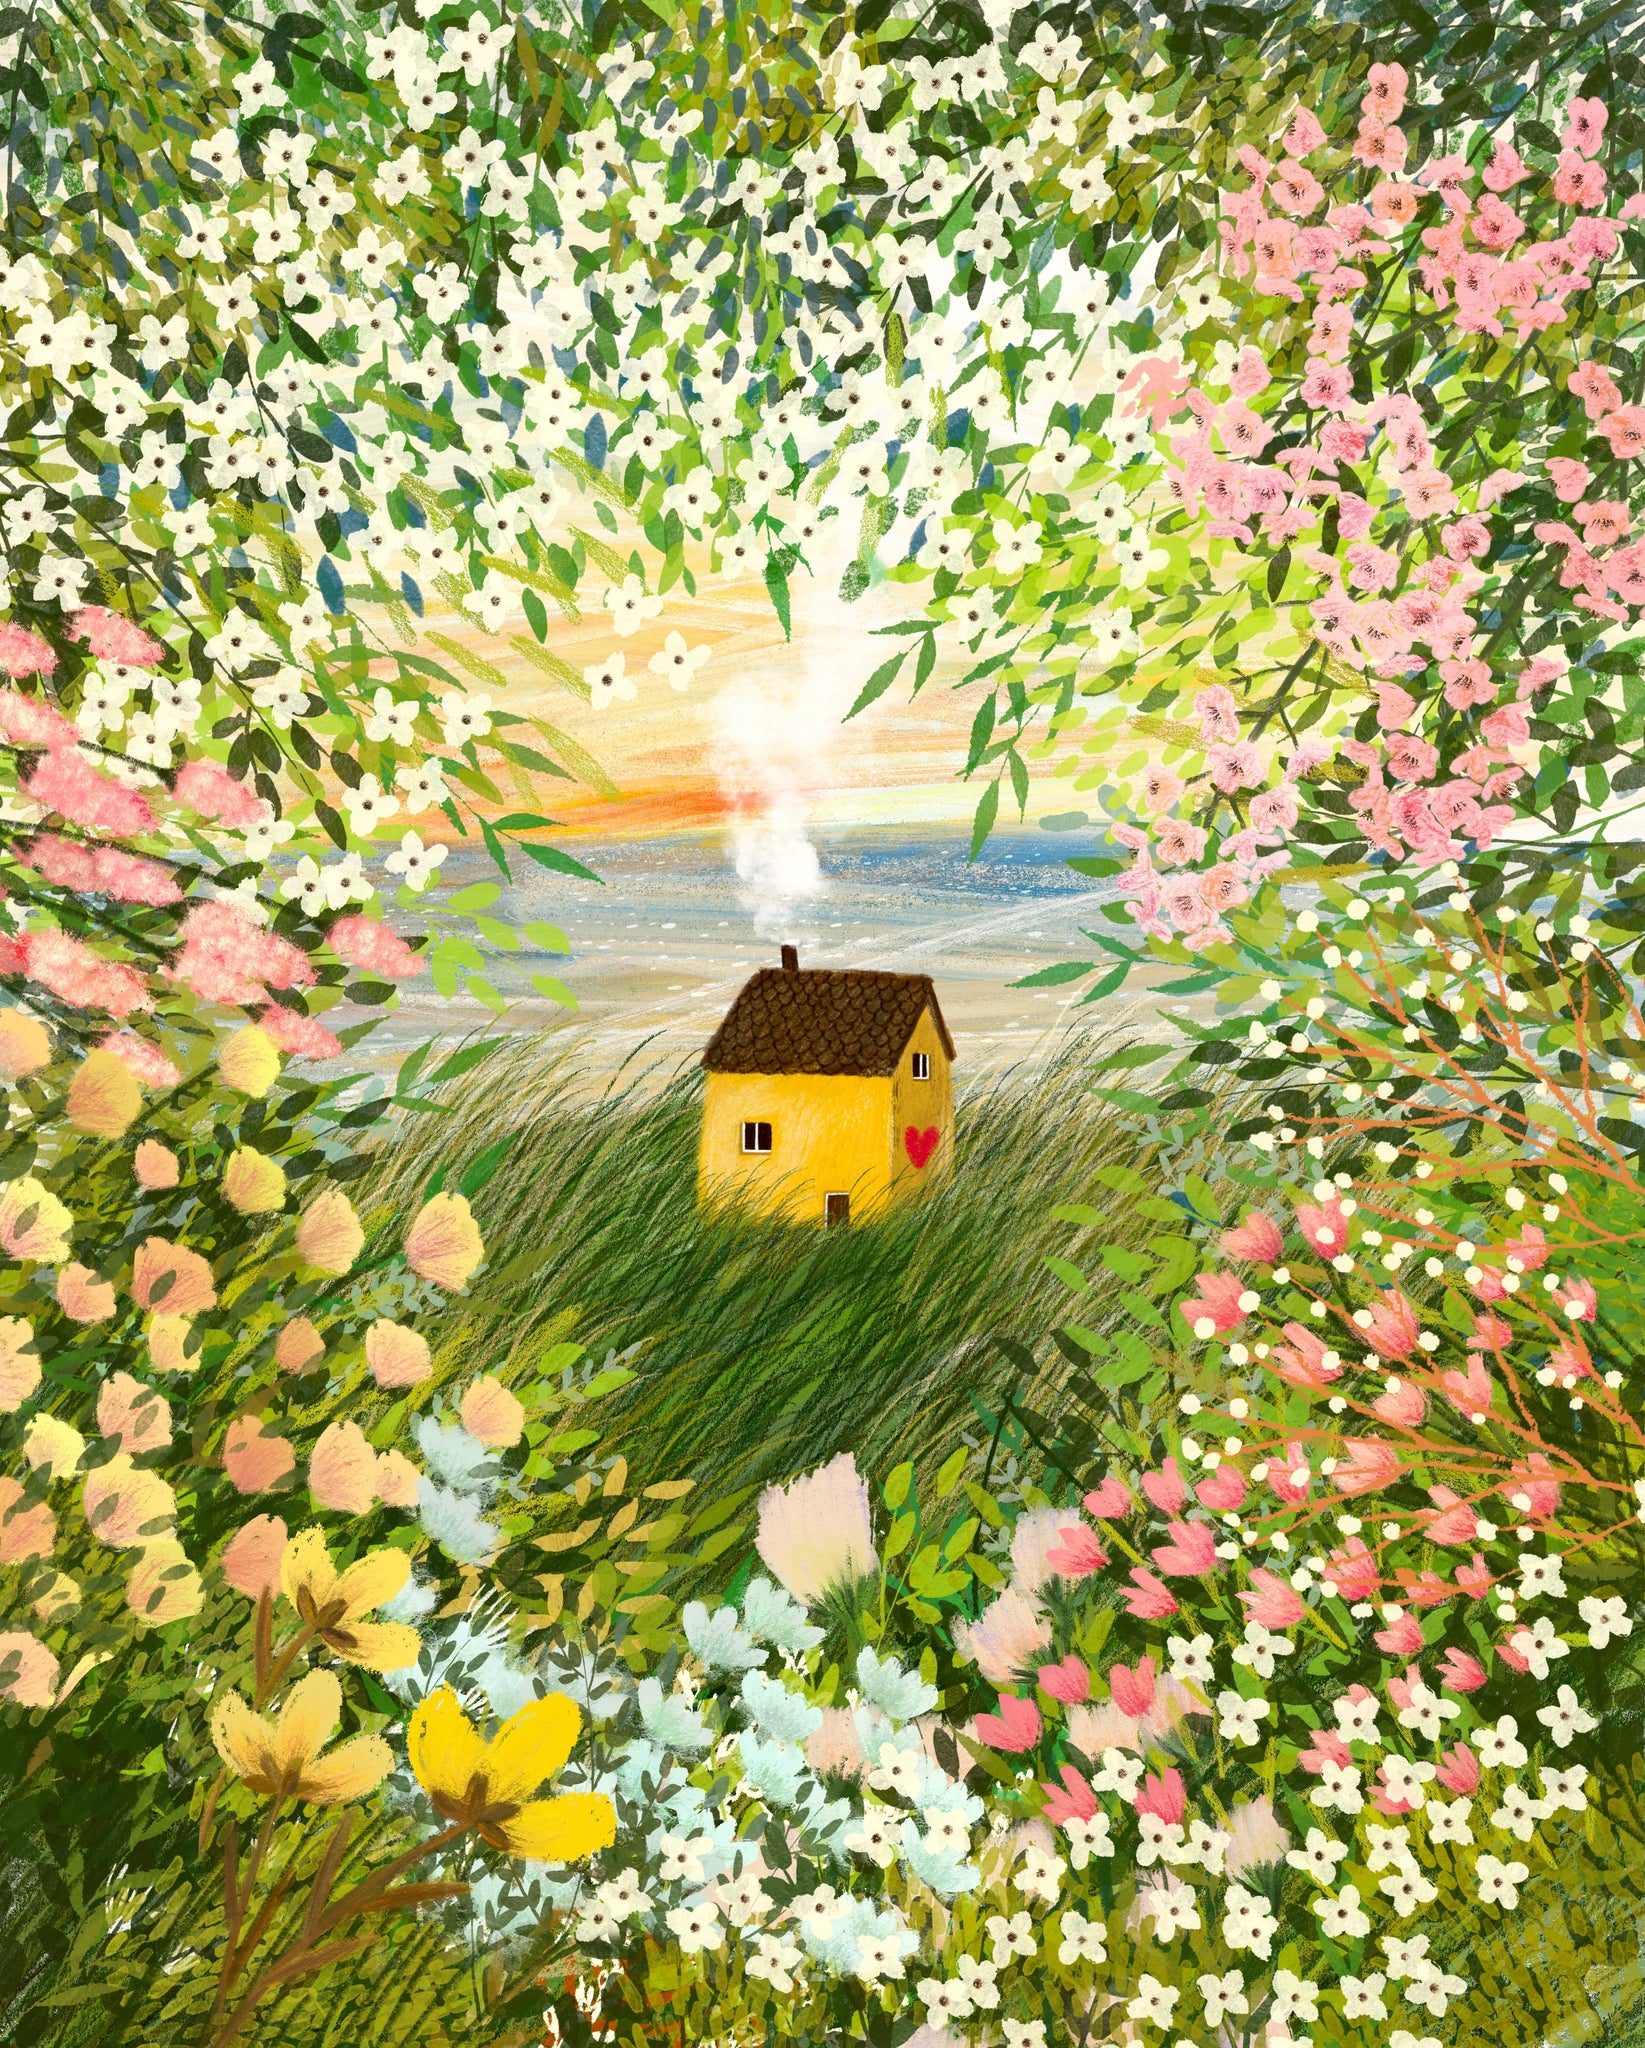 Giclee Fine Art Print "Summer in my Garden"